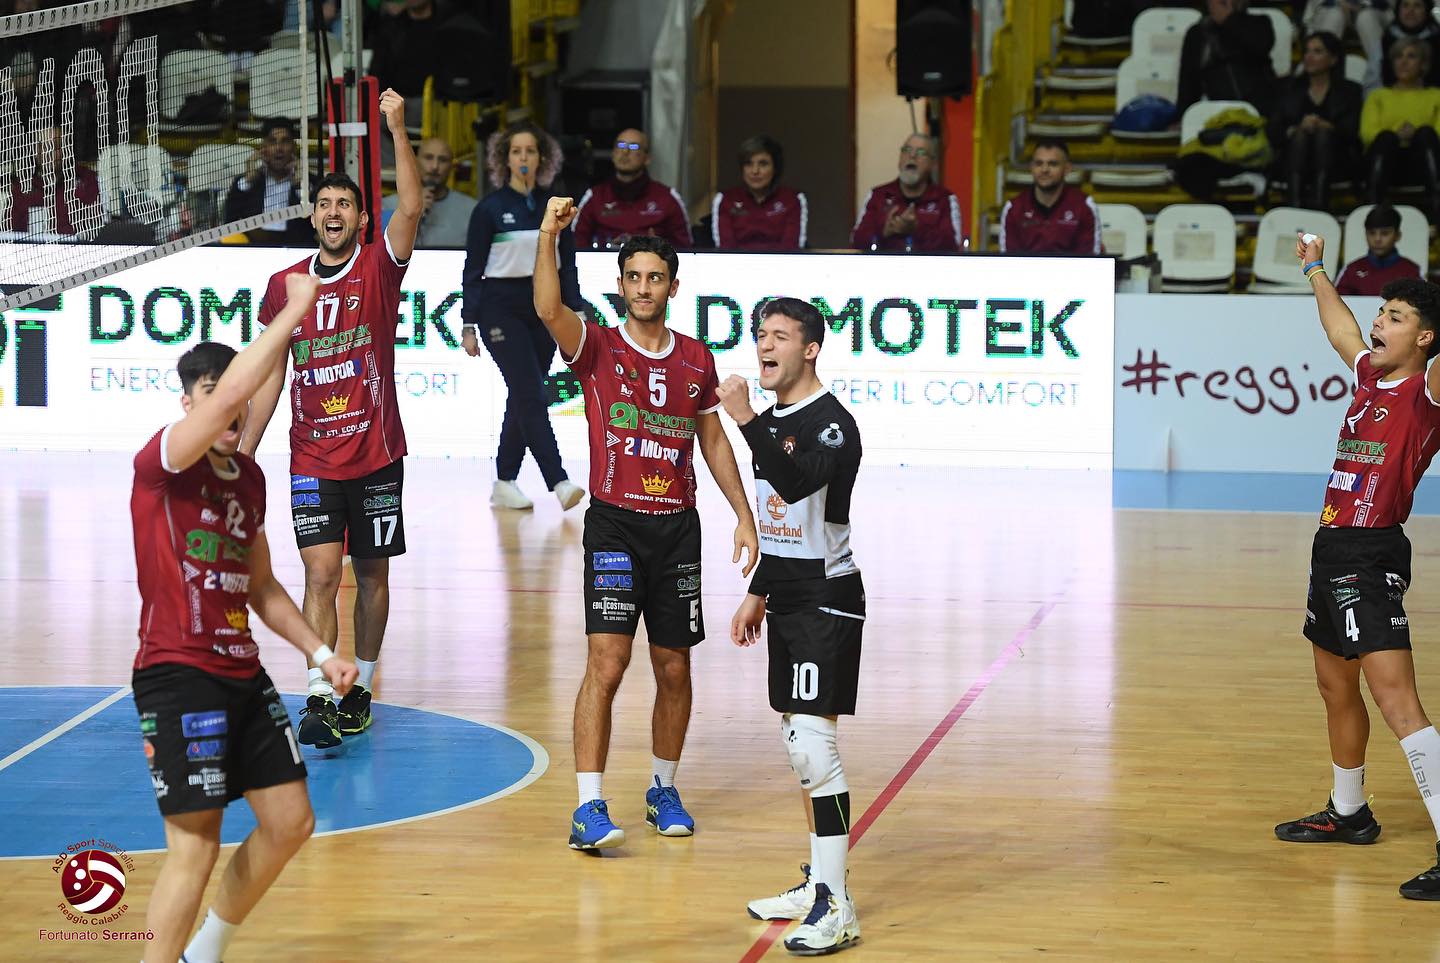 La capolista Domotek Volley Reggio Calabria ricomincia dal derby